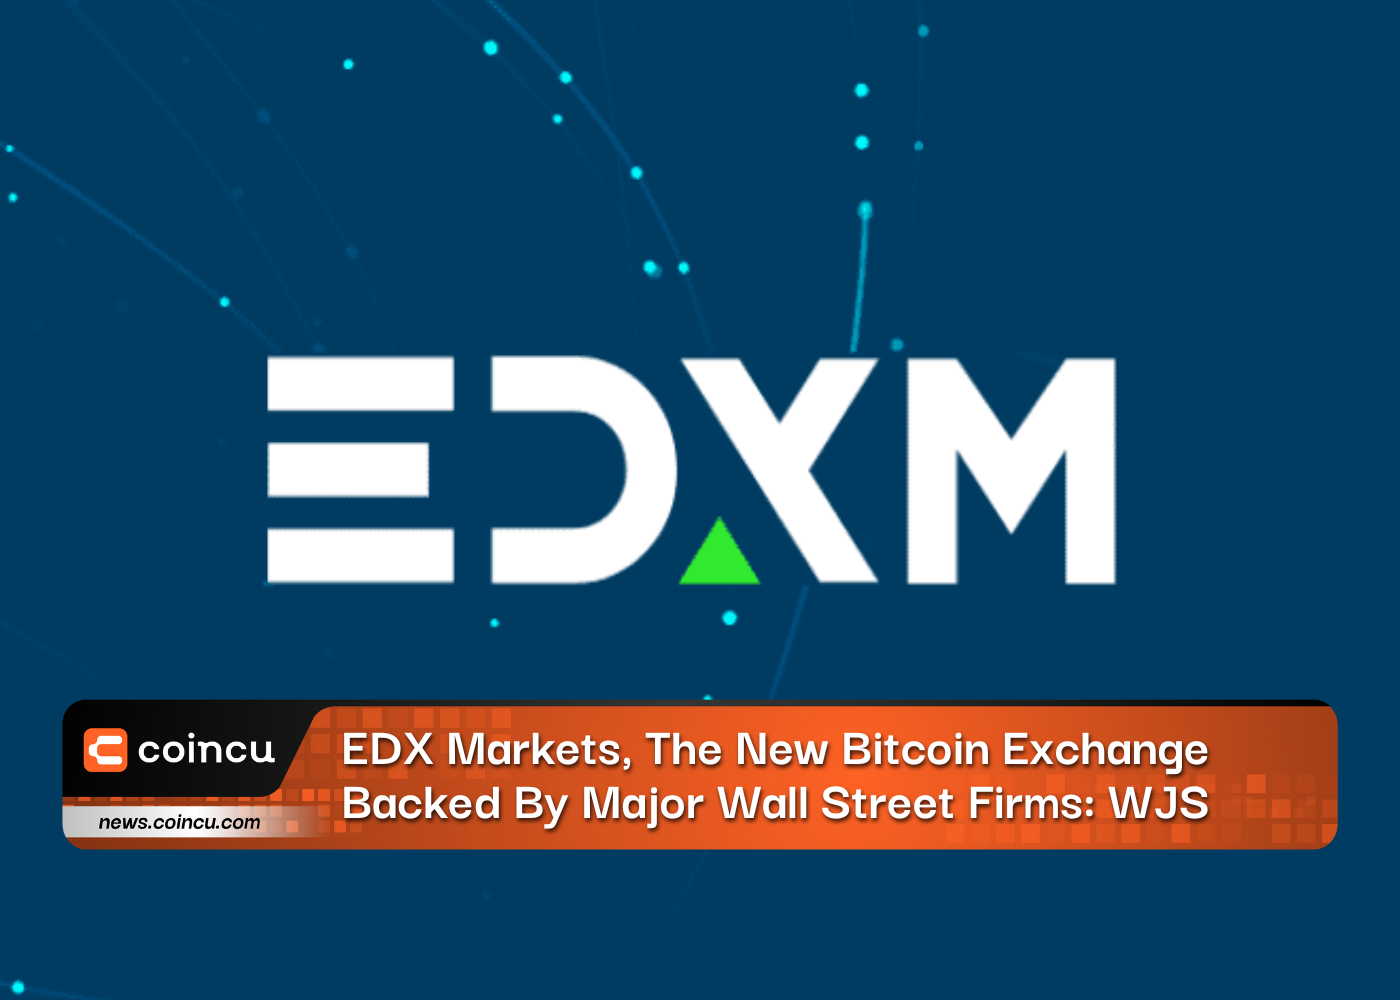 EDX मार्केट्स, प्रमुख वॉल स्ट्रीट फर्मों द्वारा समर्थित नया बिटकॉइन एक्सचेंज: WJS